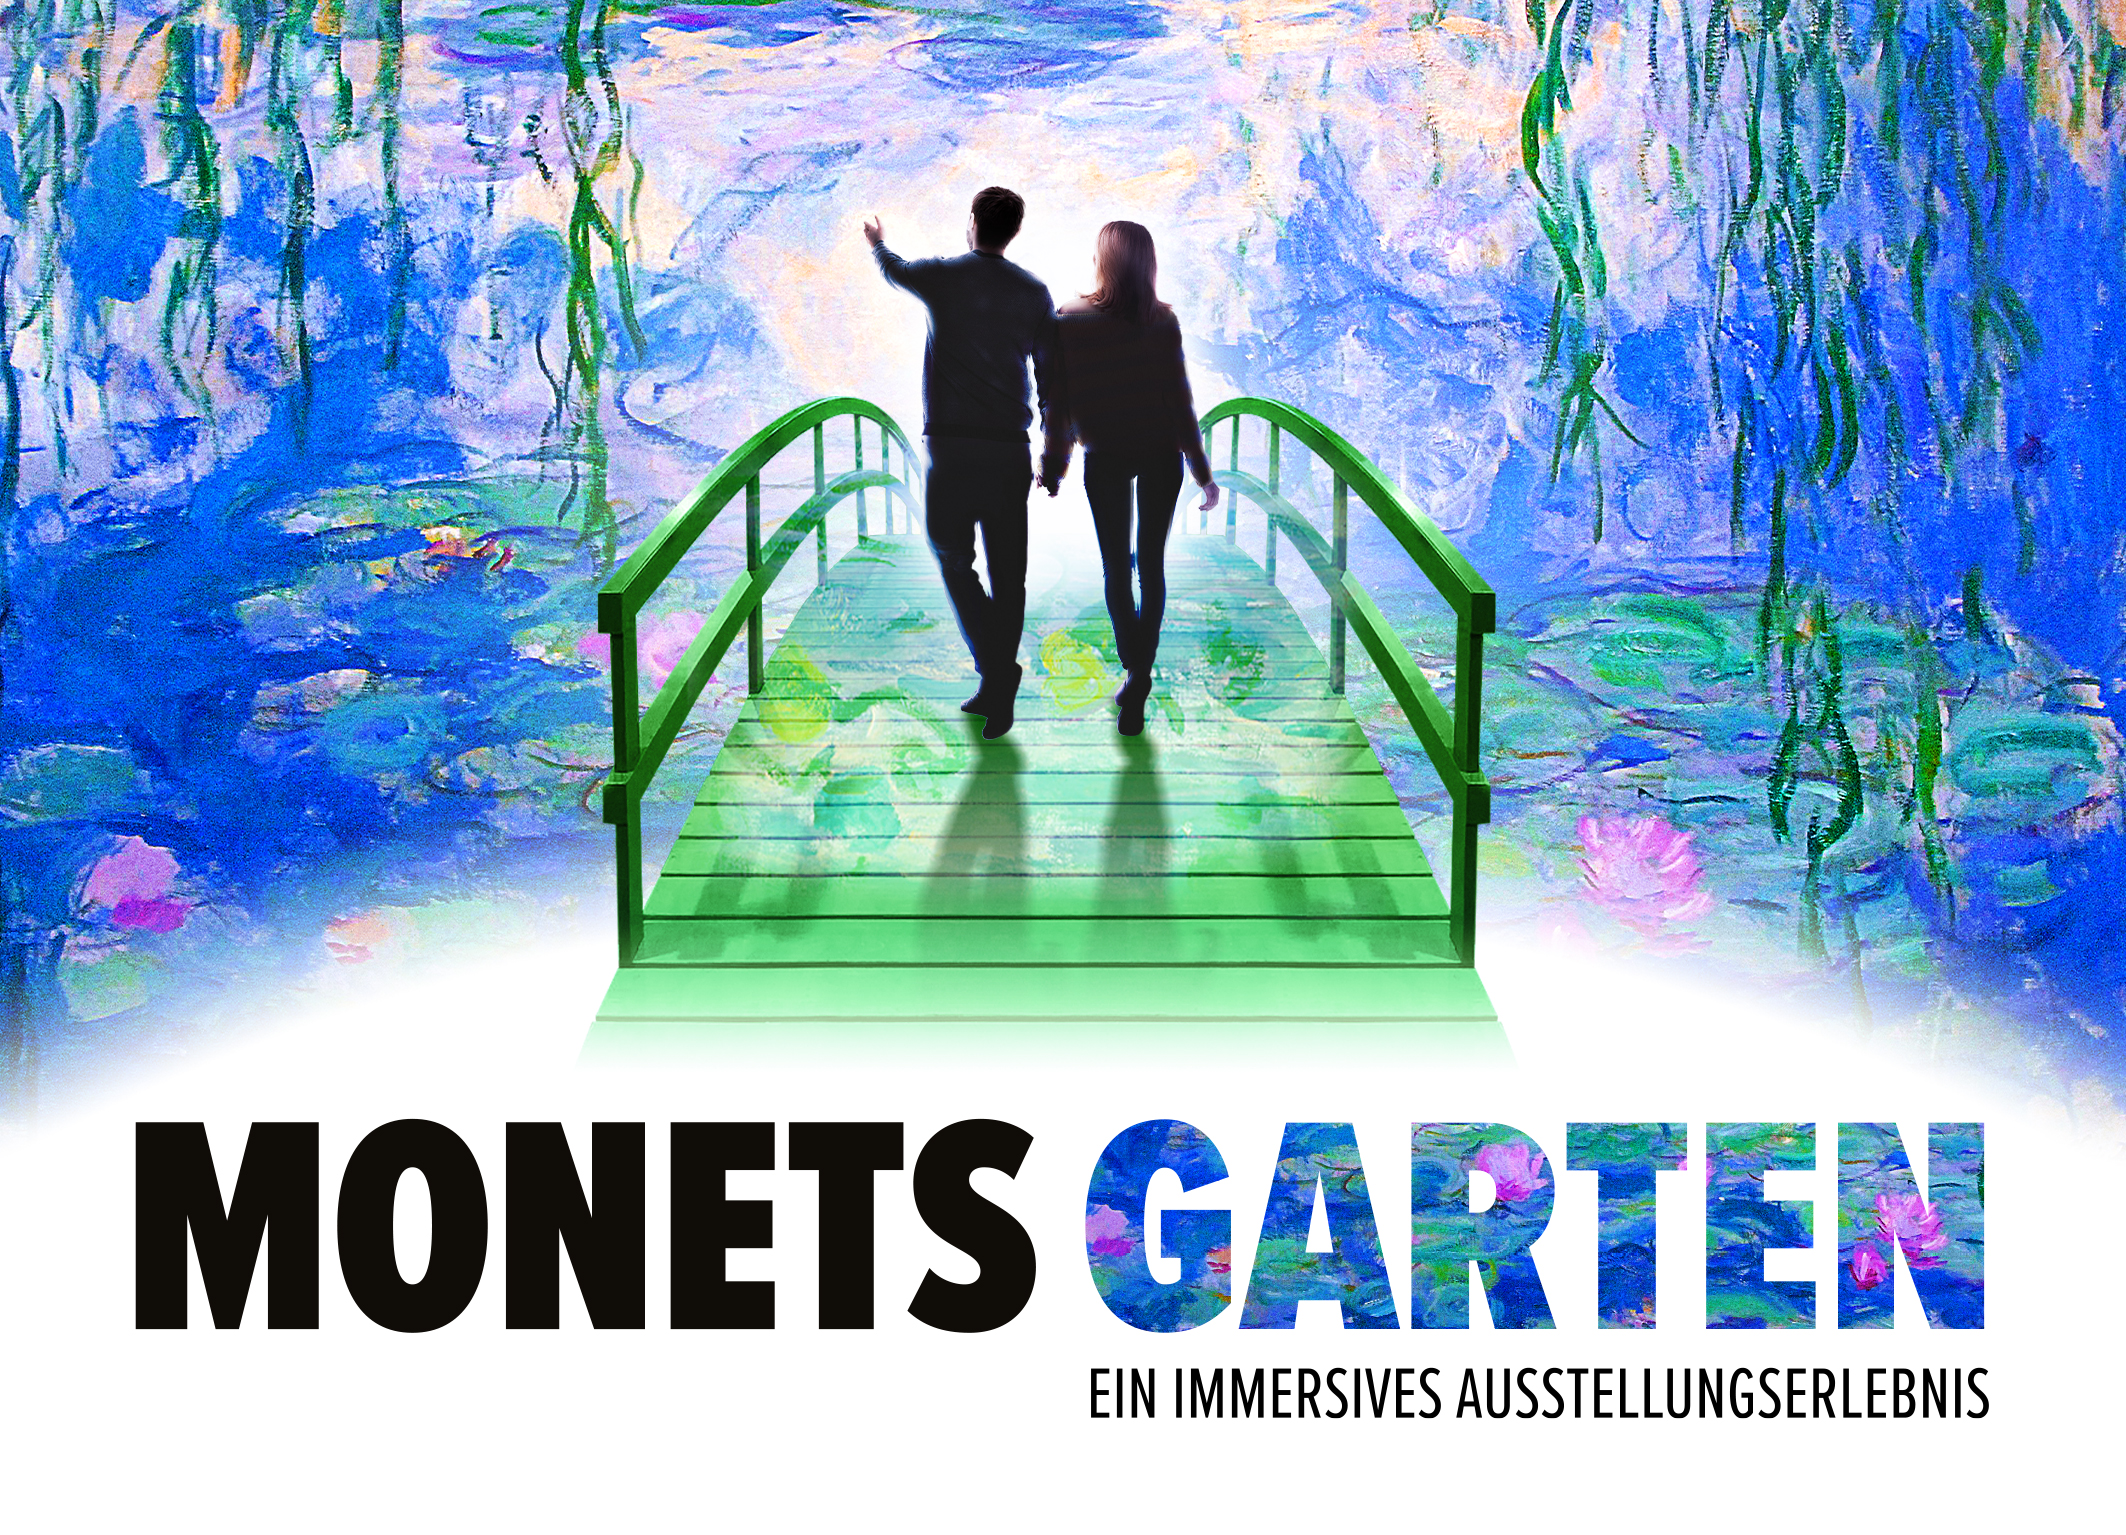 Wenn sich Realität und Illusion vermischen: ein Spaziergang durch Claude Monets Garten. Foto: WOWfactor